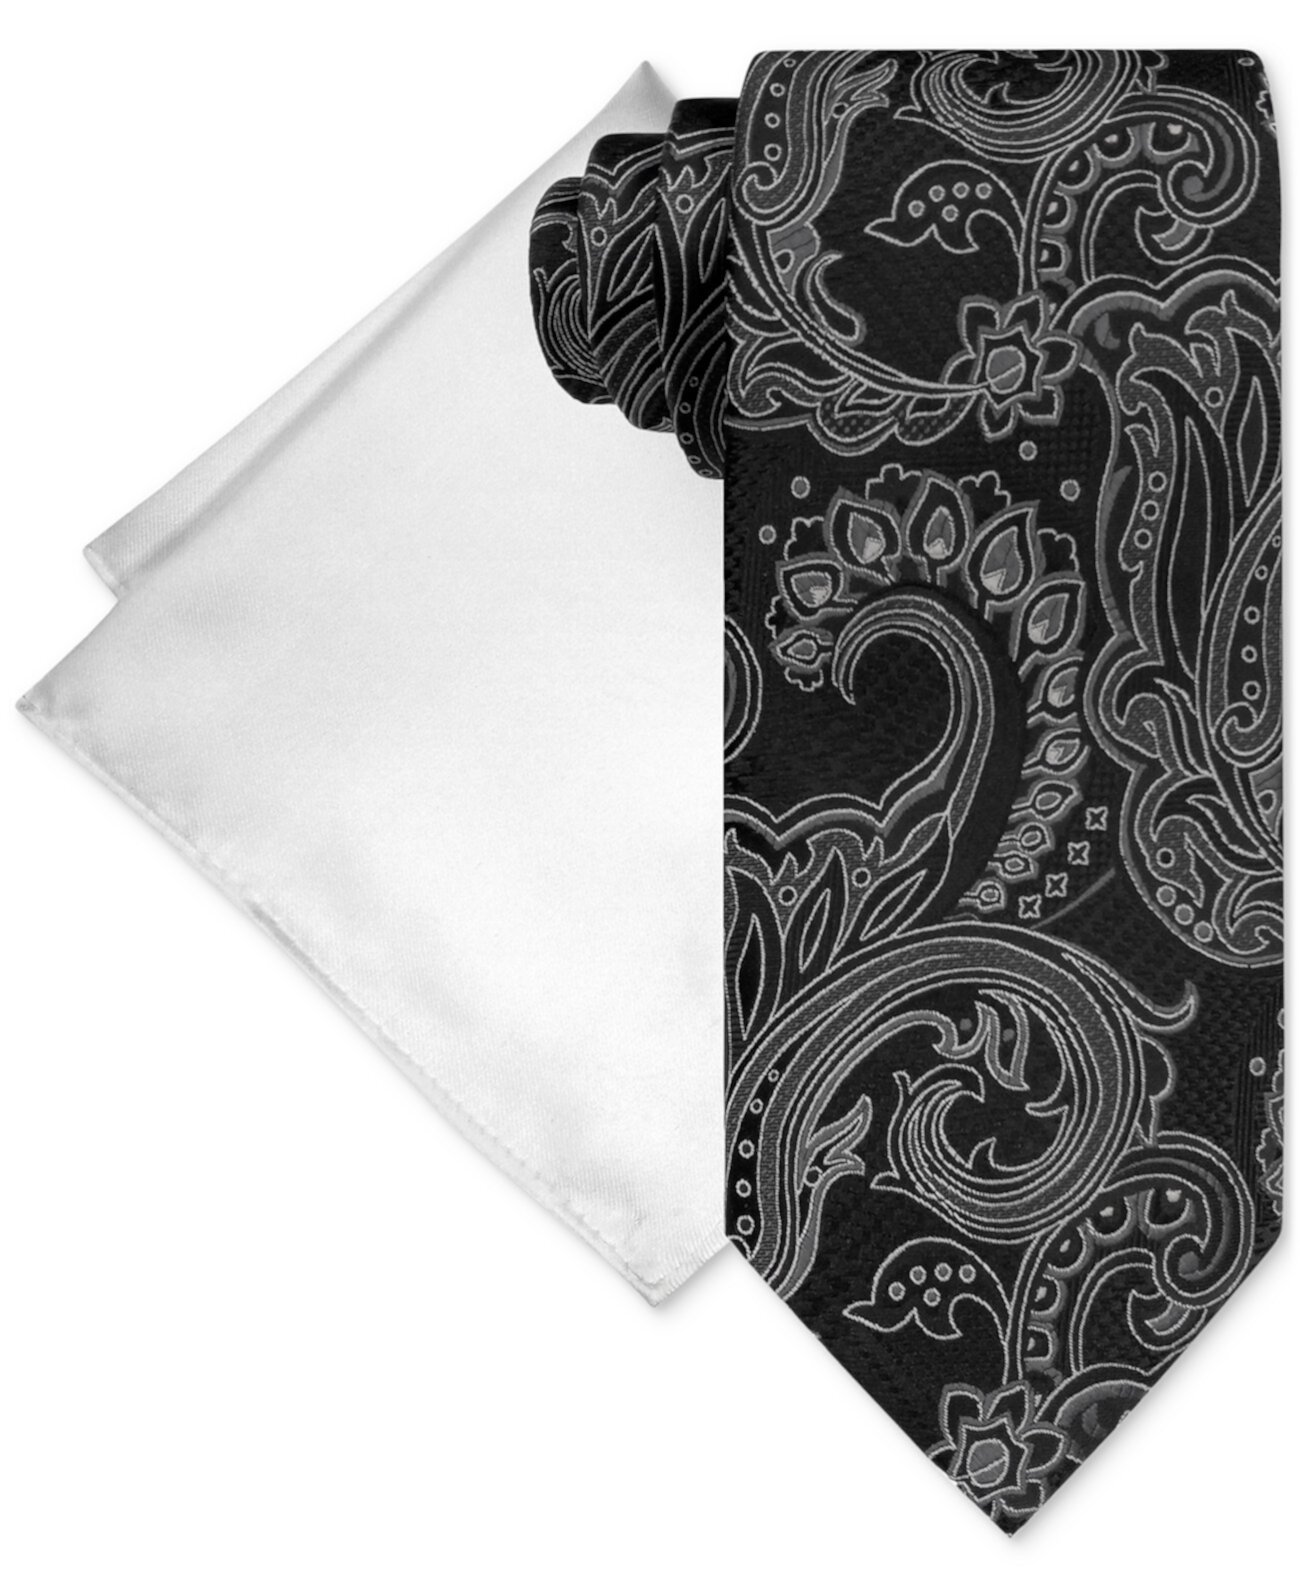 Мужской комплект из галстука с узором пейсли и нагрудного платка Steve Harvey